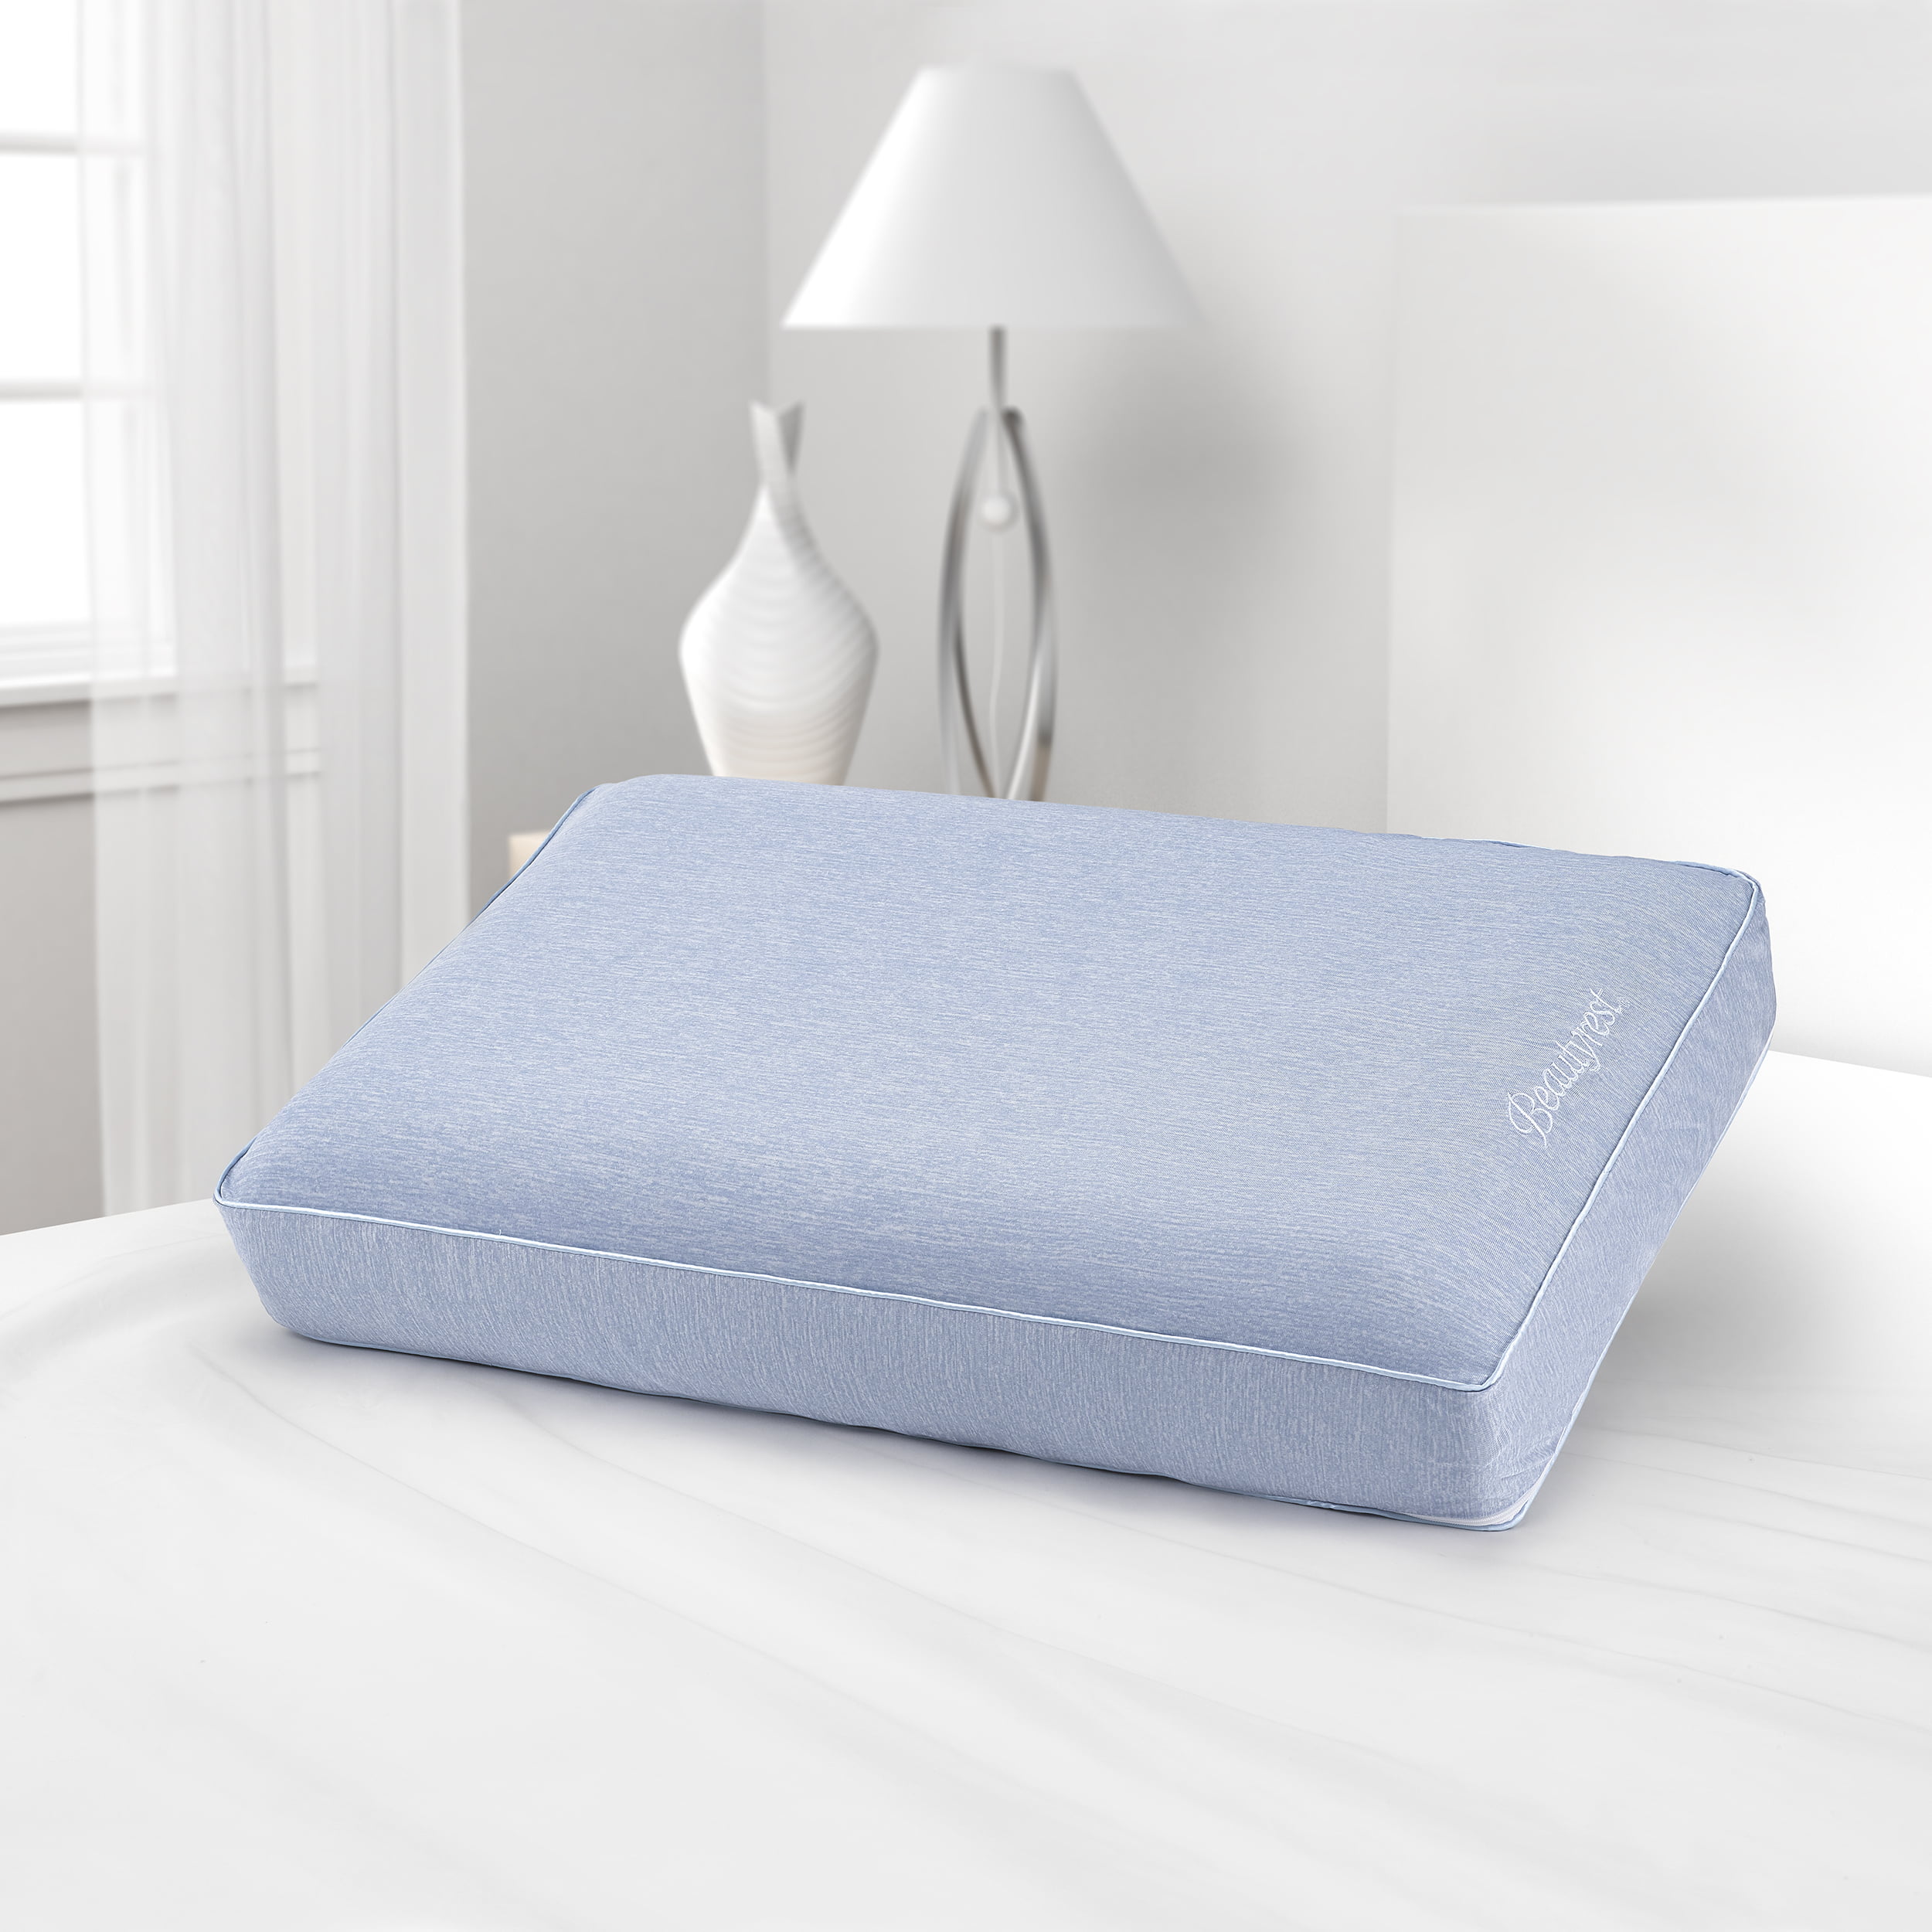 beautyrest memory foam pillow review